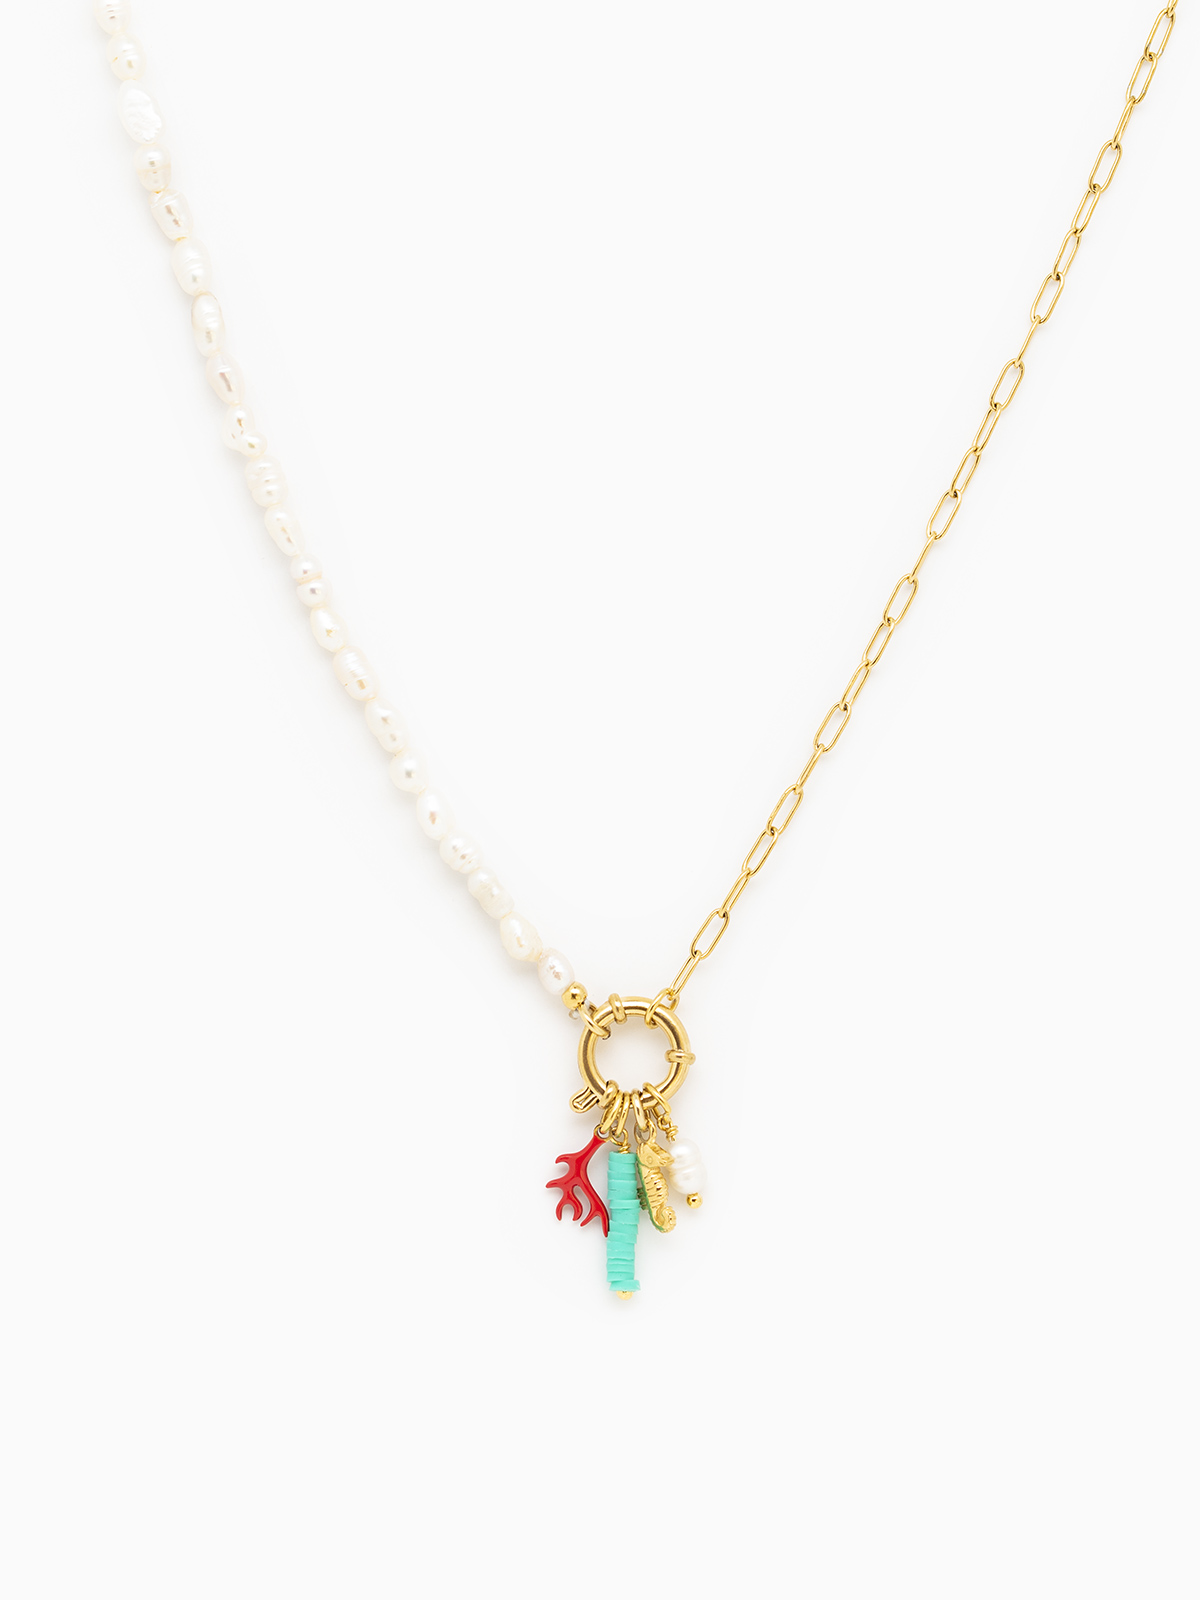 Collar mitad perlas y mitad eslabones, con un cierre en forma de broche de la colección de verano de la marca de joyas AmaloA.